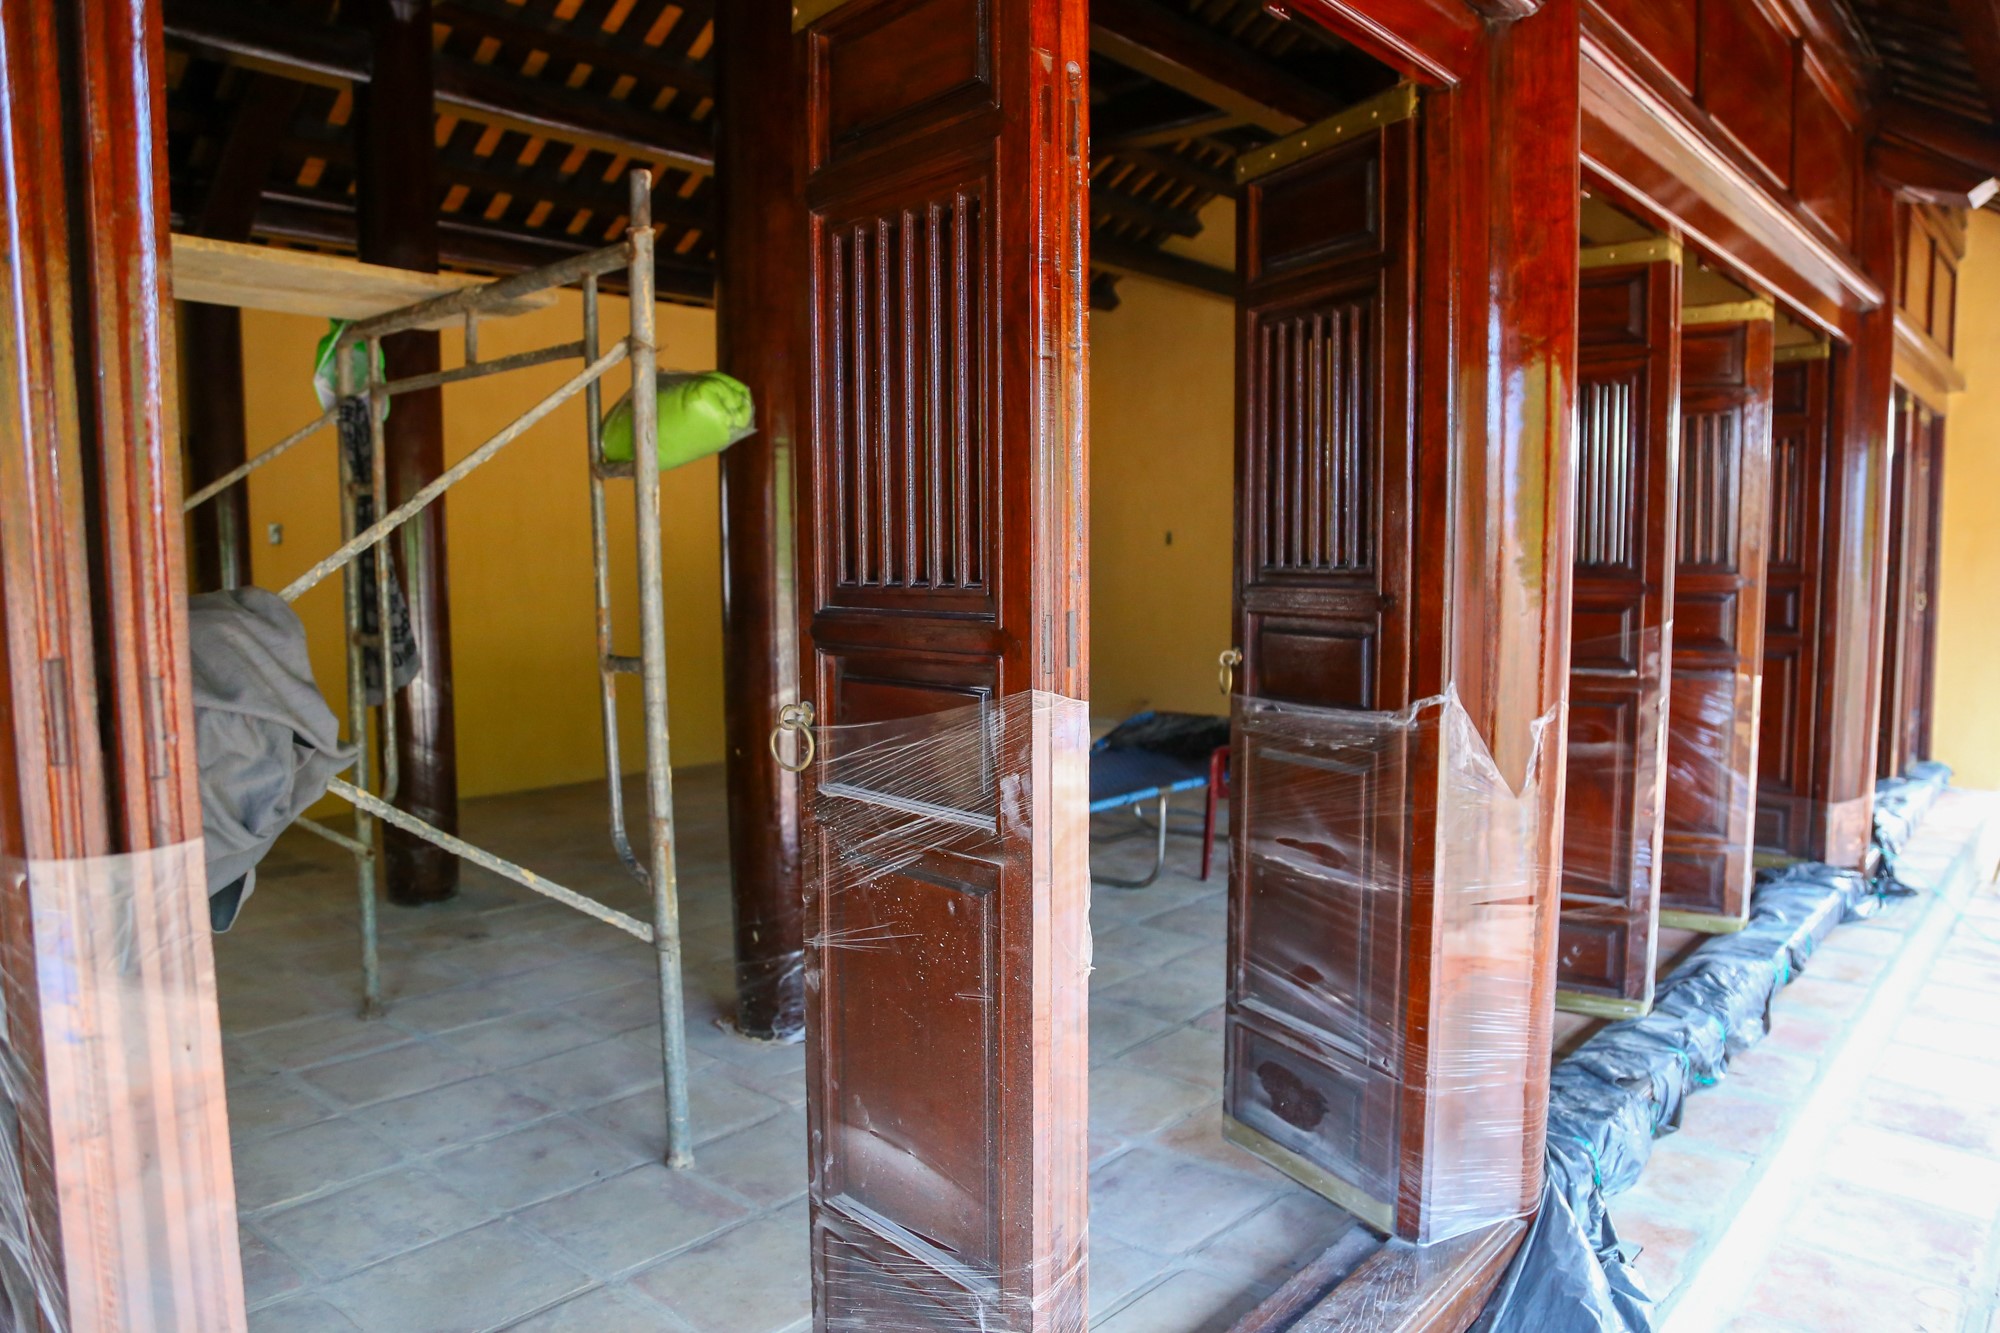 Bên trong nhà trú sở sử dụng gỗ để làm hệ thống cửa, cột kèo.